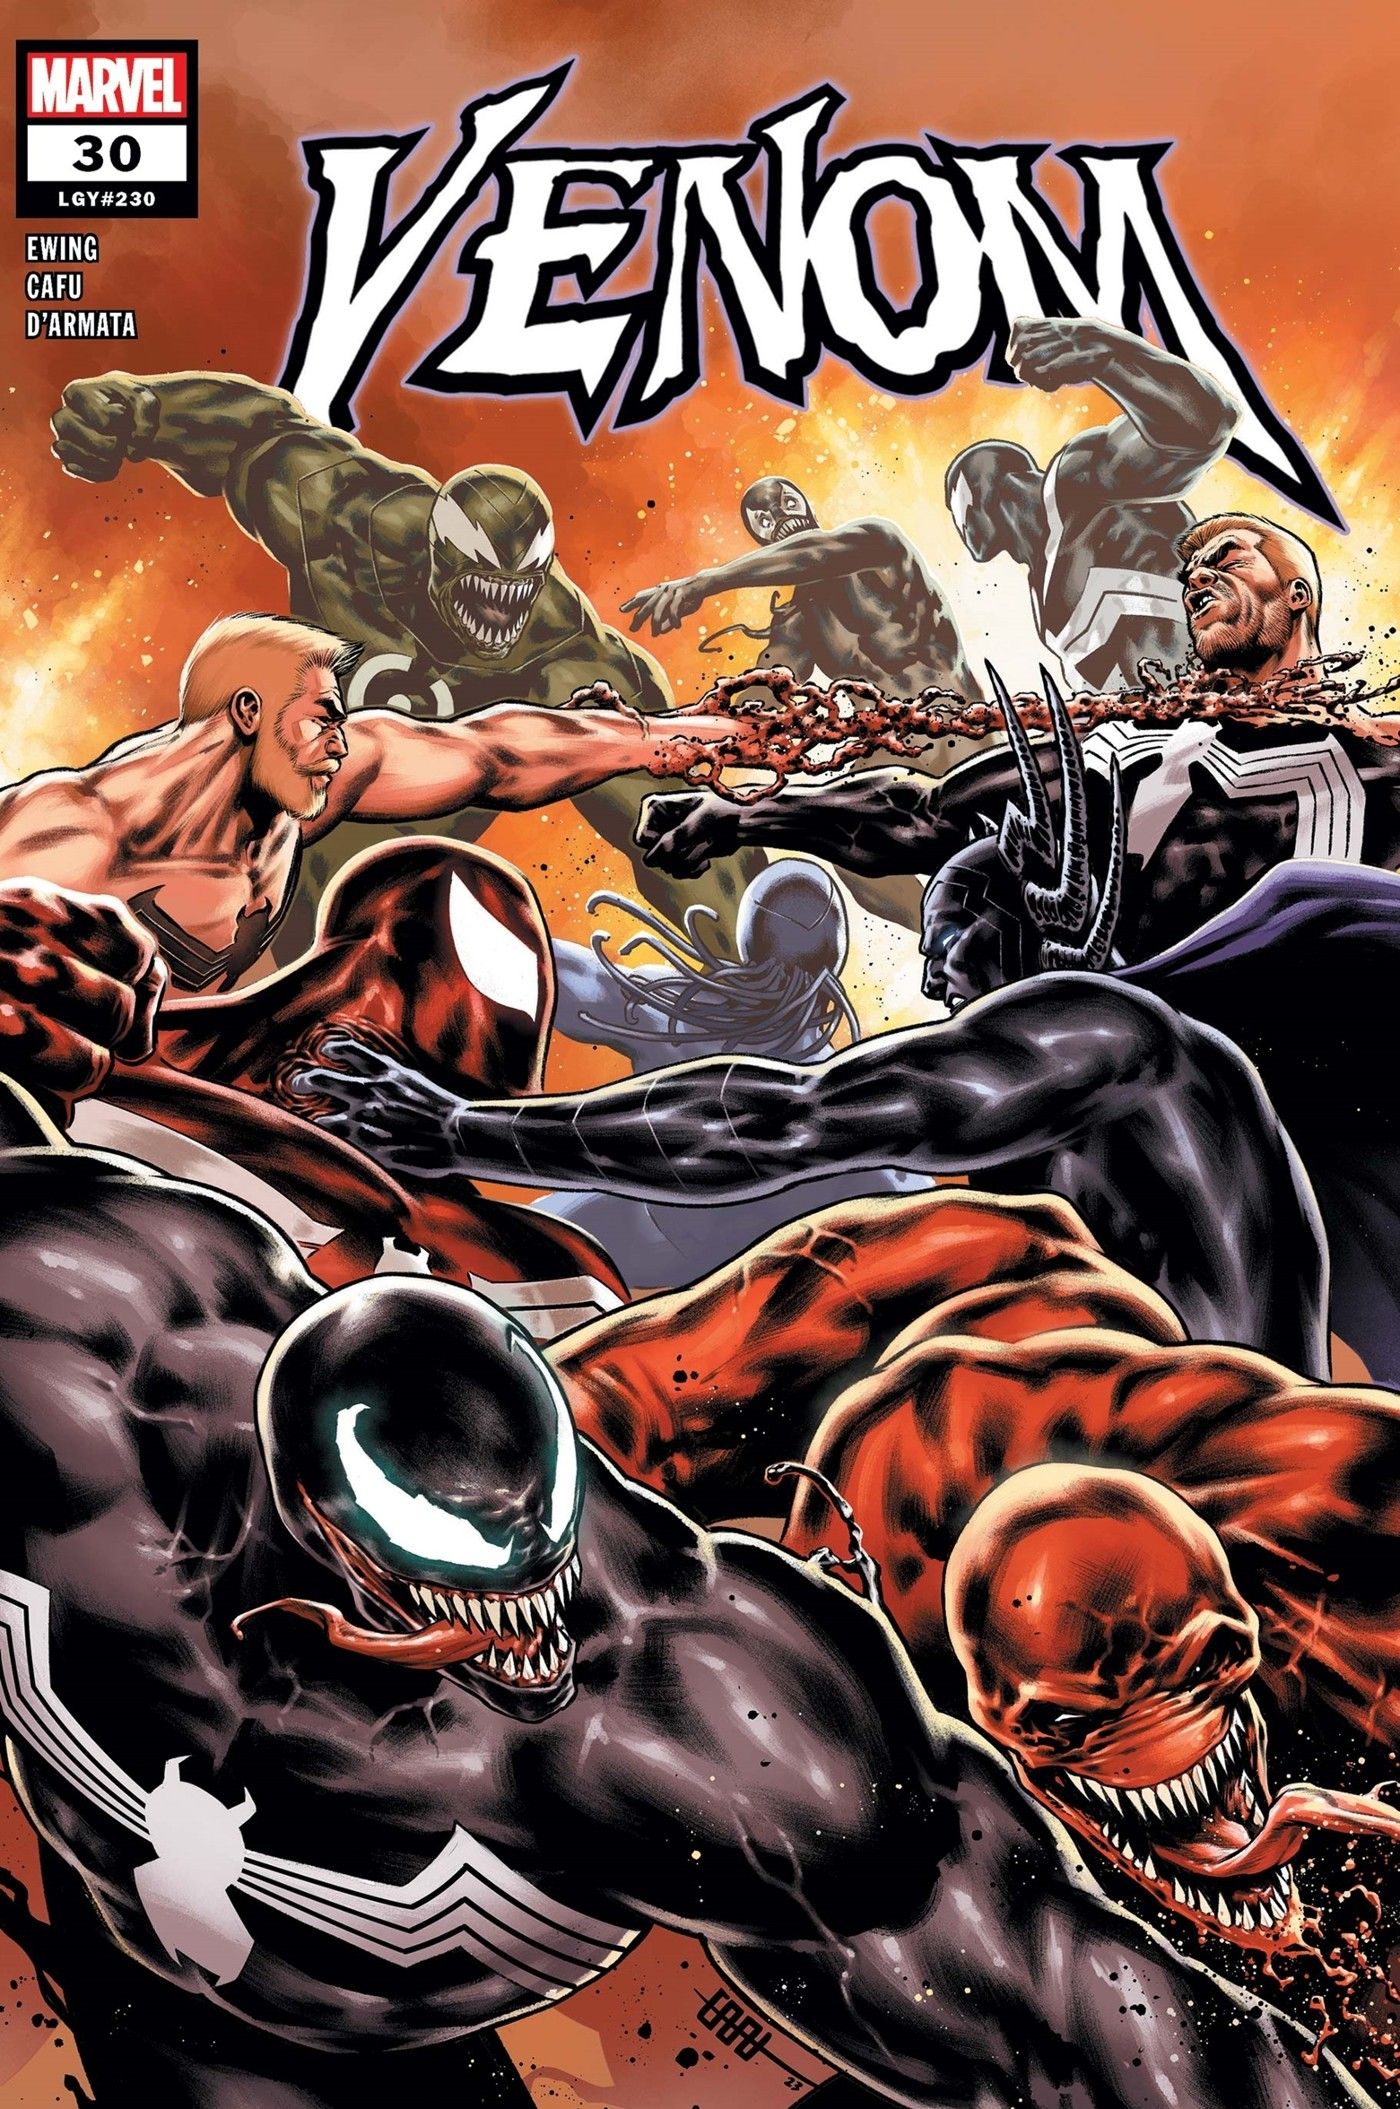 Capa do Venom #30, mostrando um simbionte gratuito para todos.